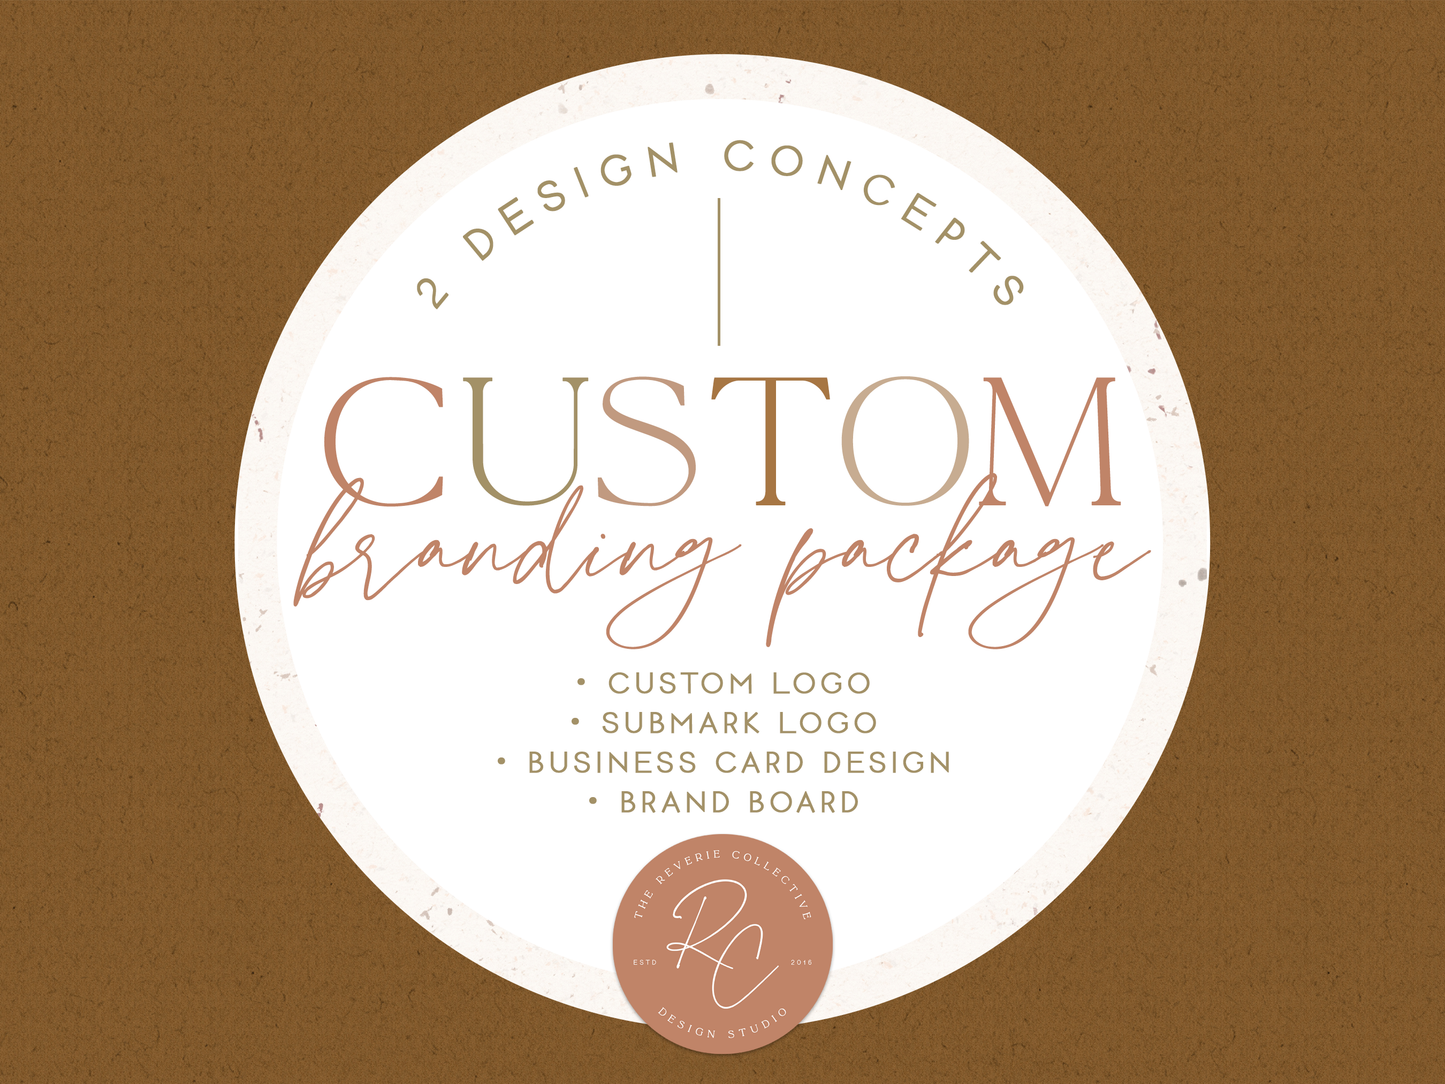 Custom Branding Package | Custom Logo Design